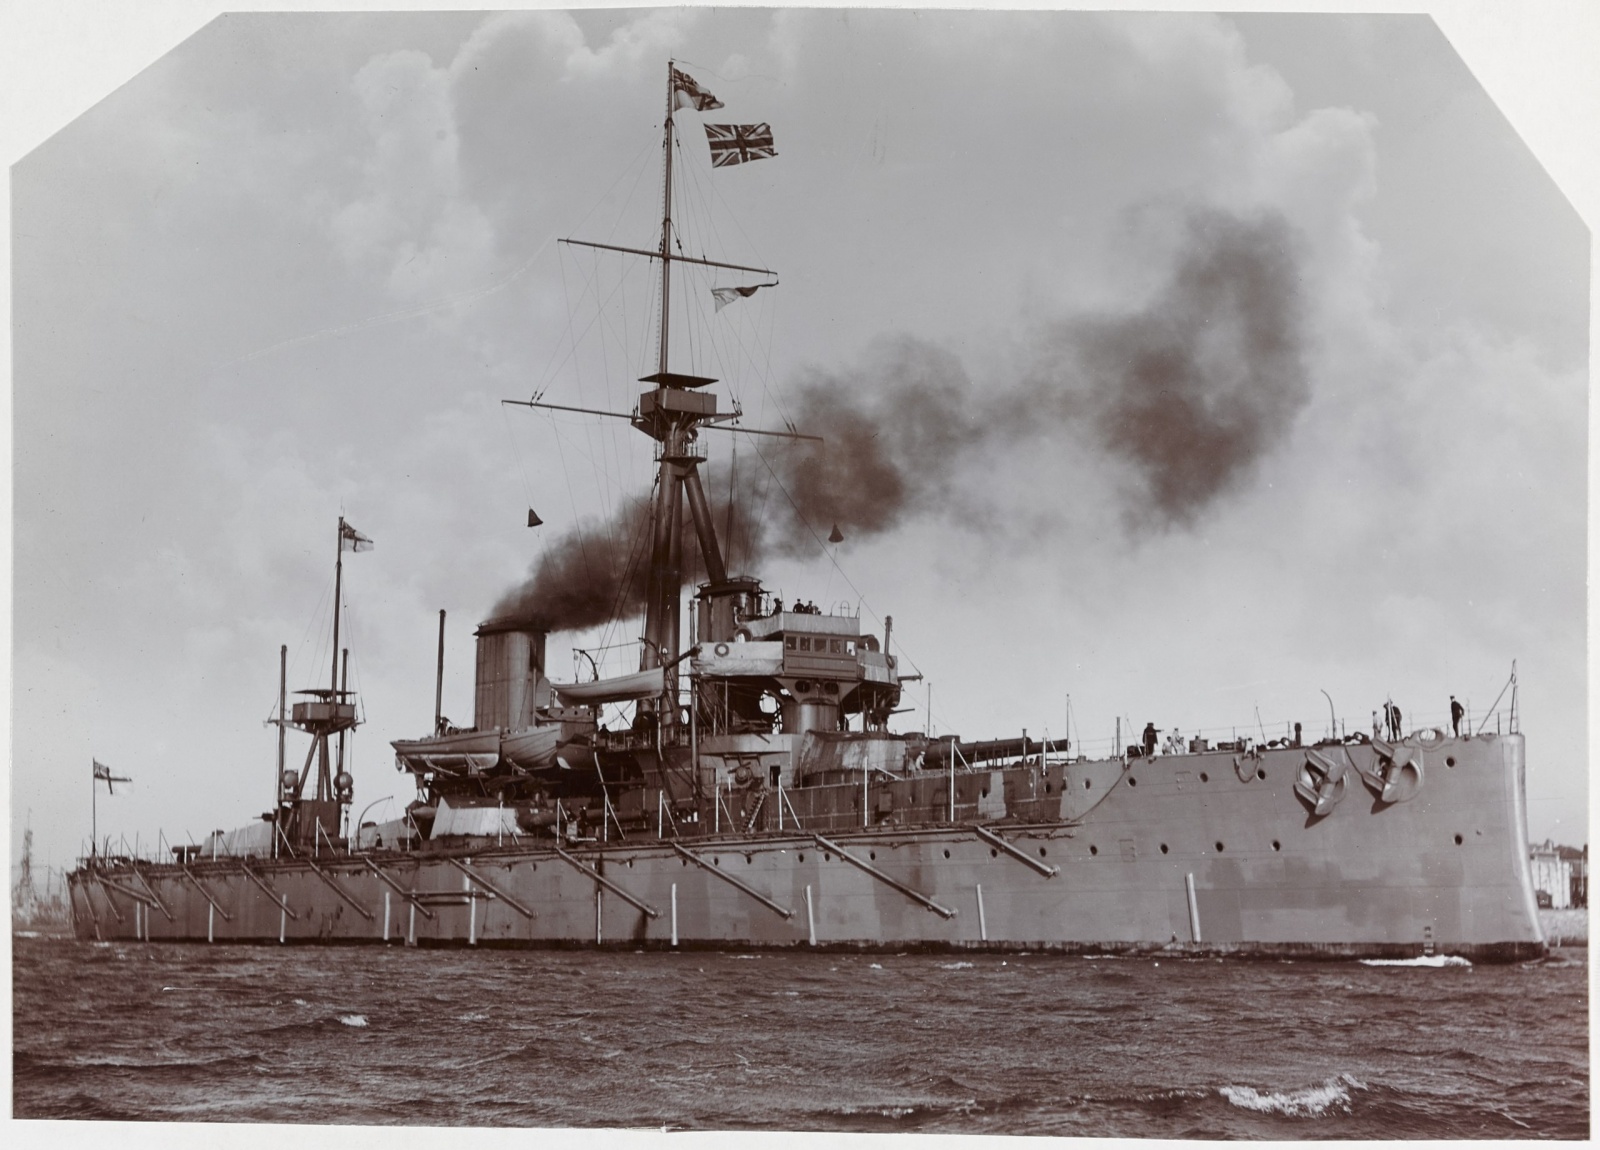 HMS Dreadnought был примечателен не только своим вооружением и бронёй, но и скоростью в 21 узел (24 мили в час), которая стала возможной благодаря турбинам Парсонса.